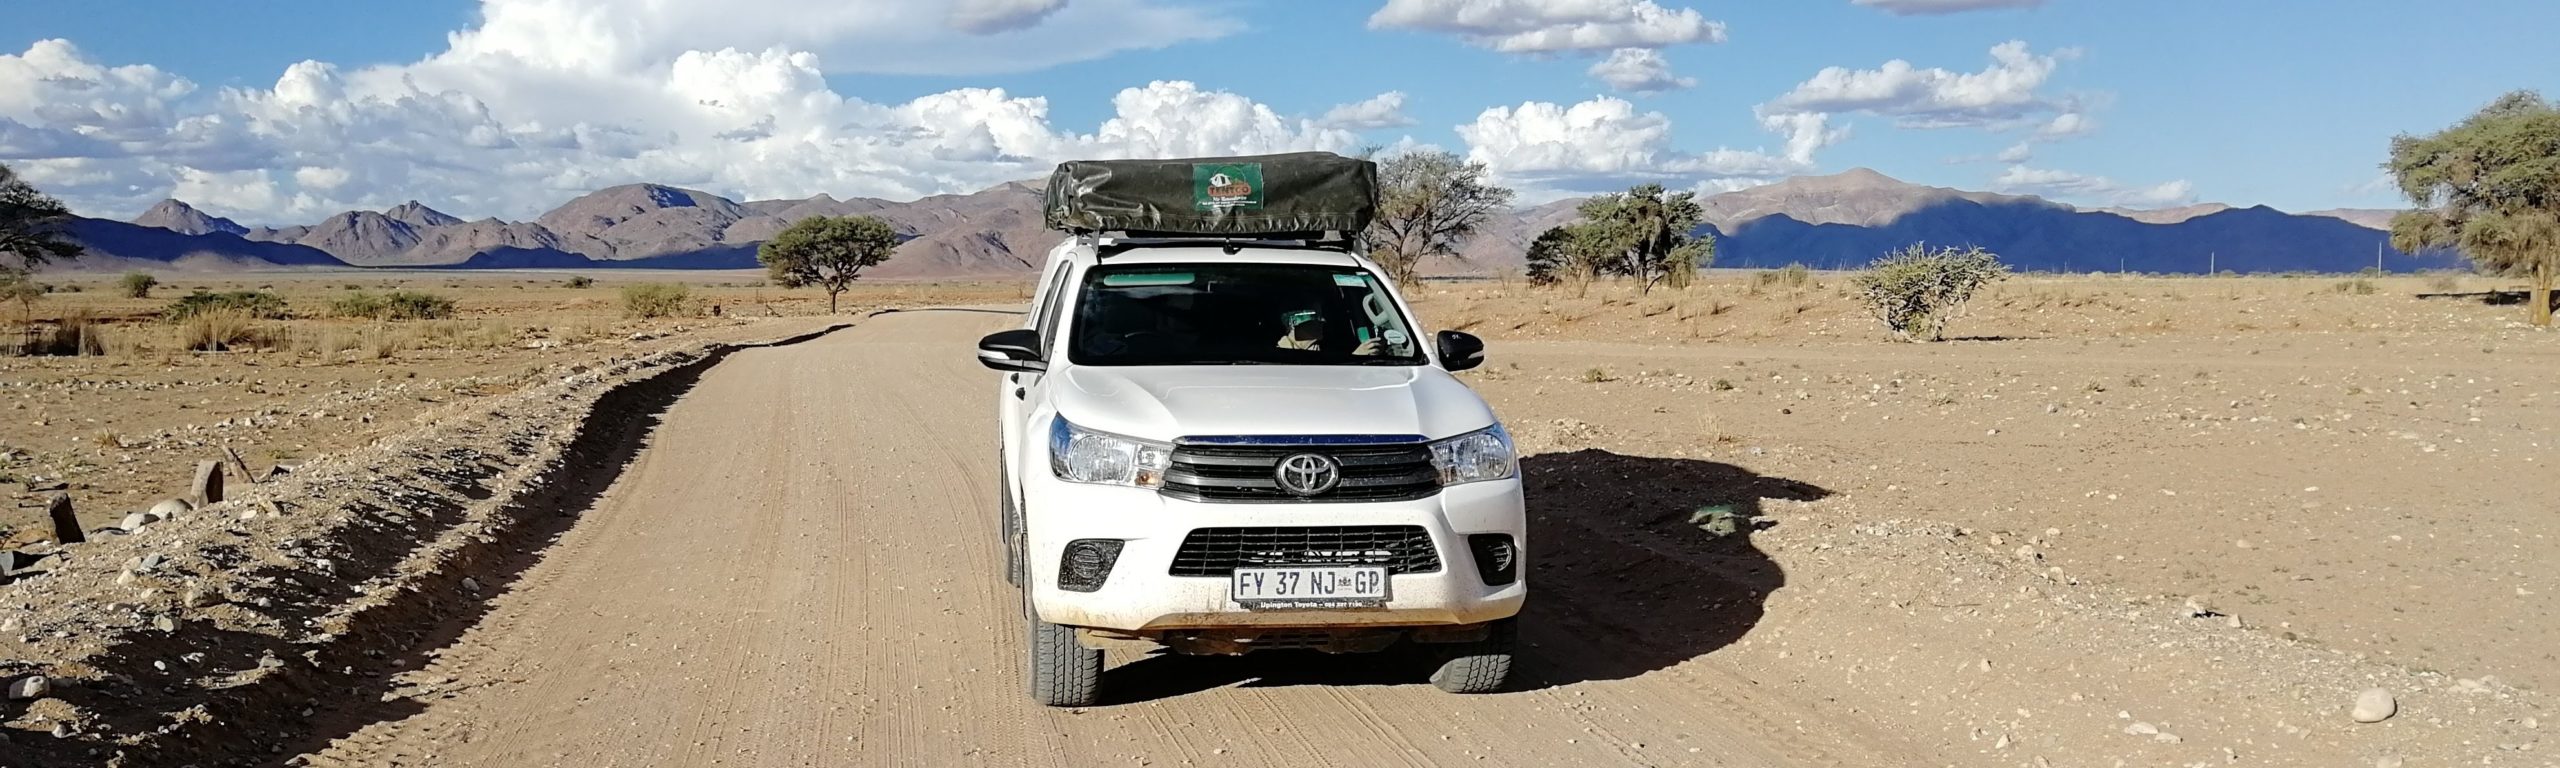 Allrad-Camper vor Bergen in Namibia